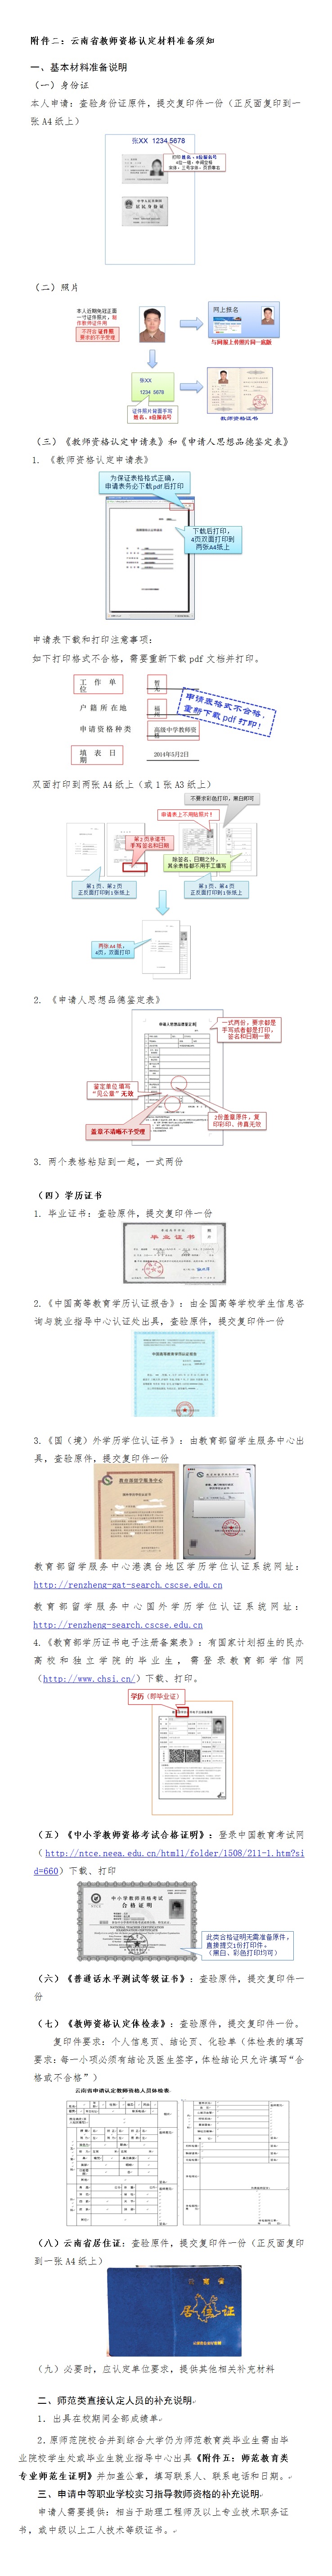 云南省2018年春季中小学教师资格认定